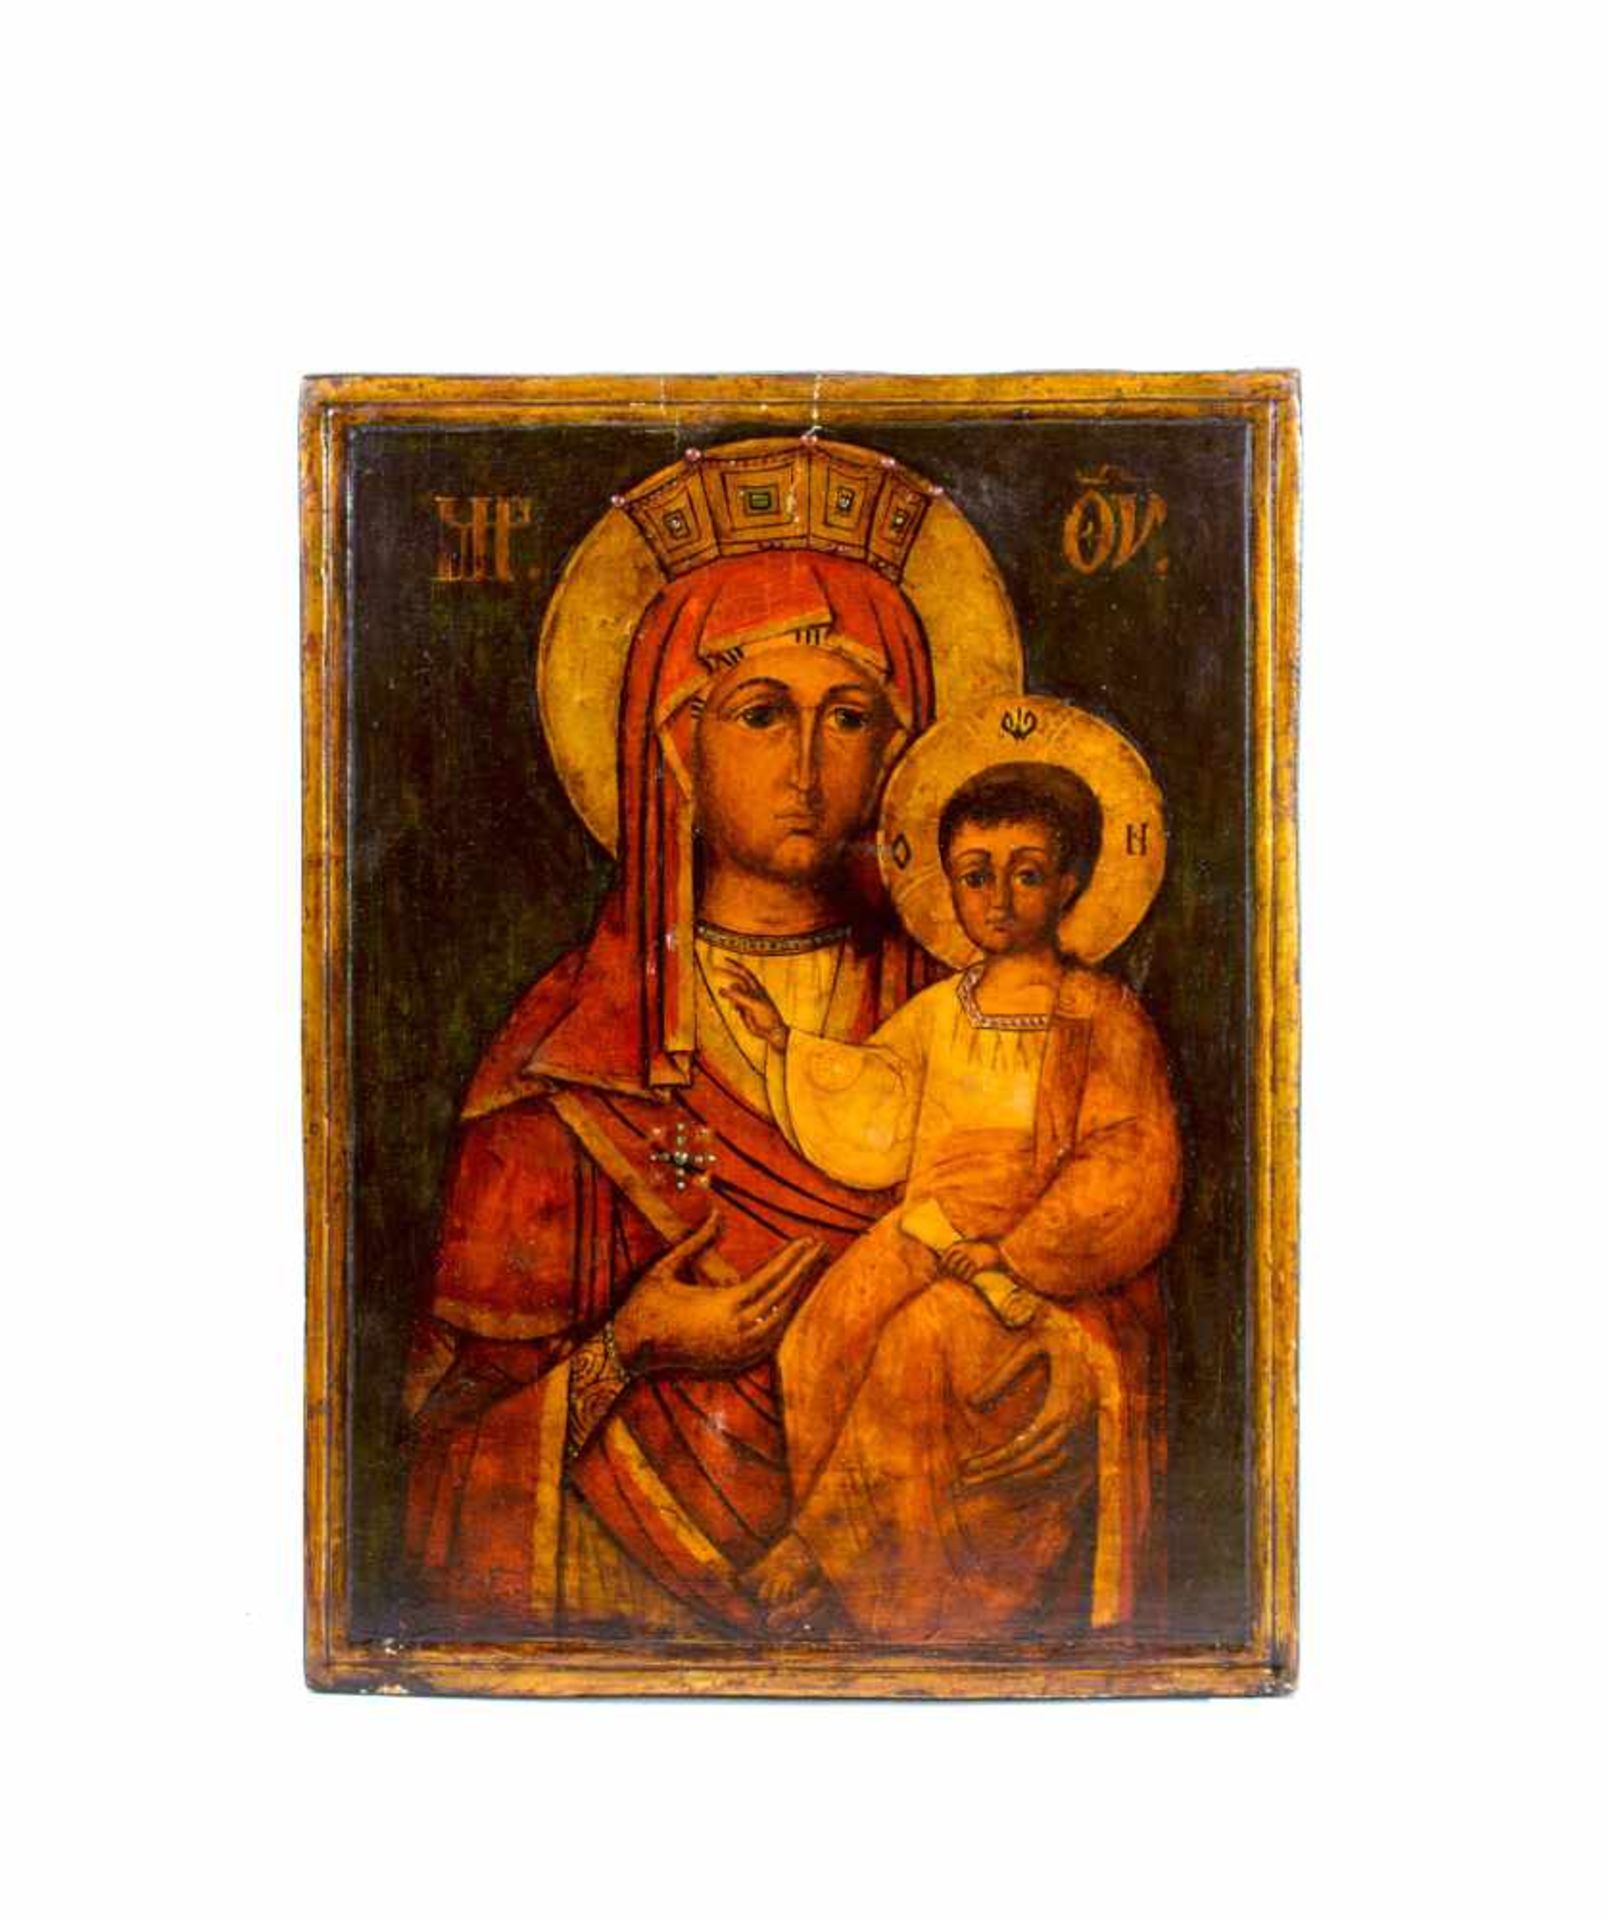 Ikone 'Gottesmutter Hodigitria'Griechenland, um 1800, Tempera auf Holz, 34 cm x 25,5 cm, am Rand mit